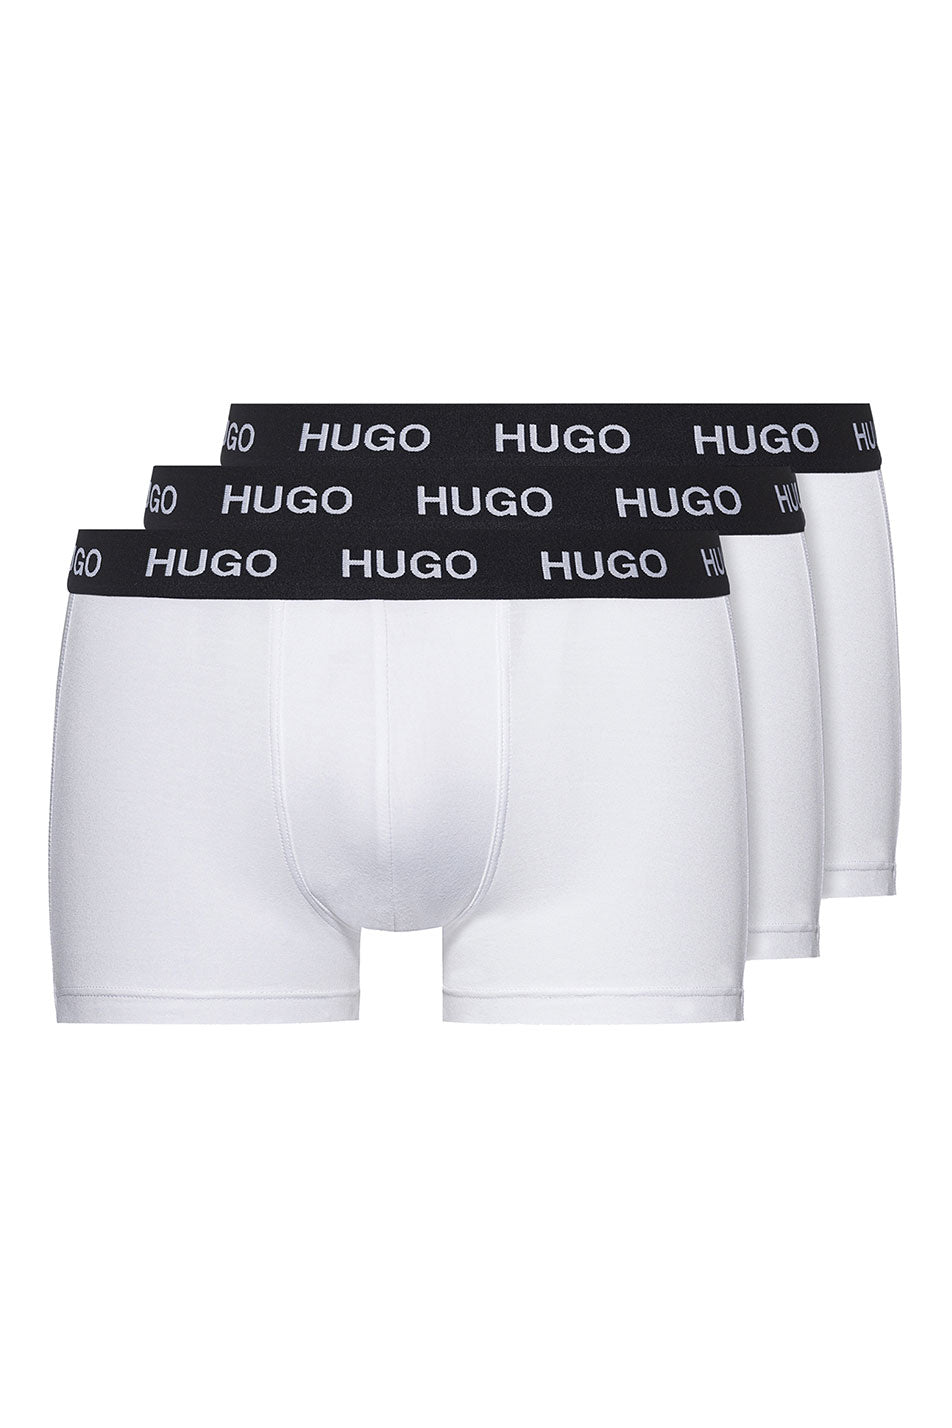 HUGO Men's Trunk 3 Pack